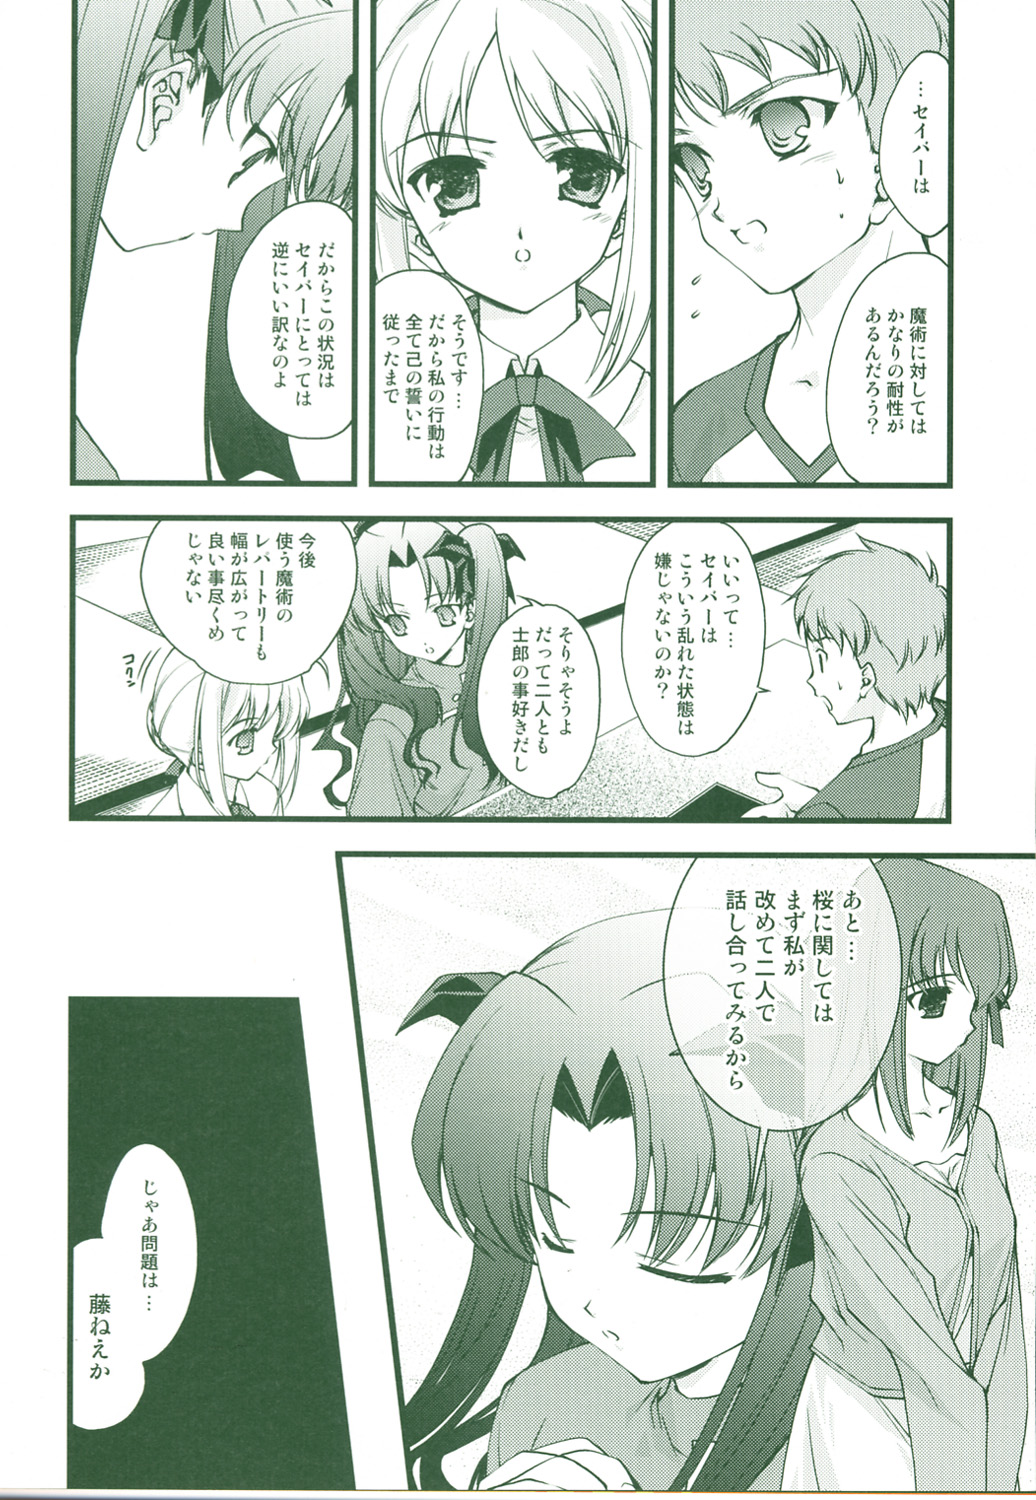 (CR36) [Renai Mangaka (Naruse Hirofume)] SLASH 3 + (Fate/stay night) page 6 full